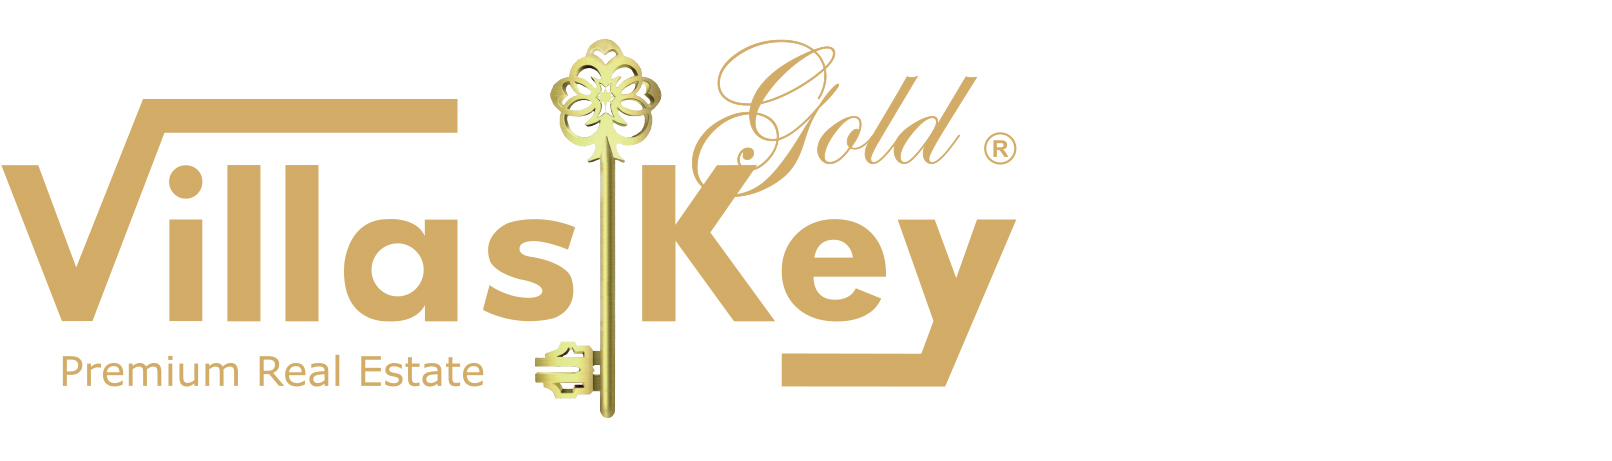 Villas Key Gold - Agent Contact